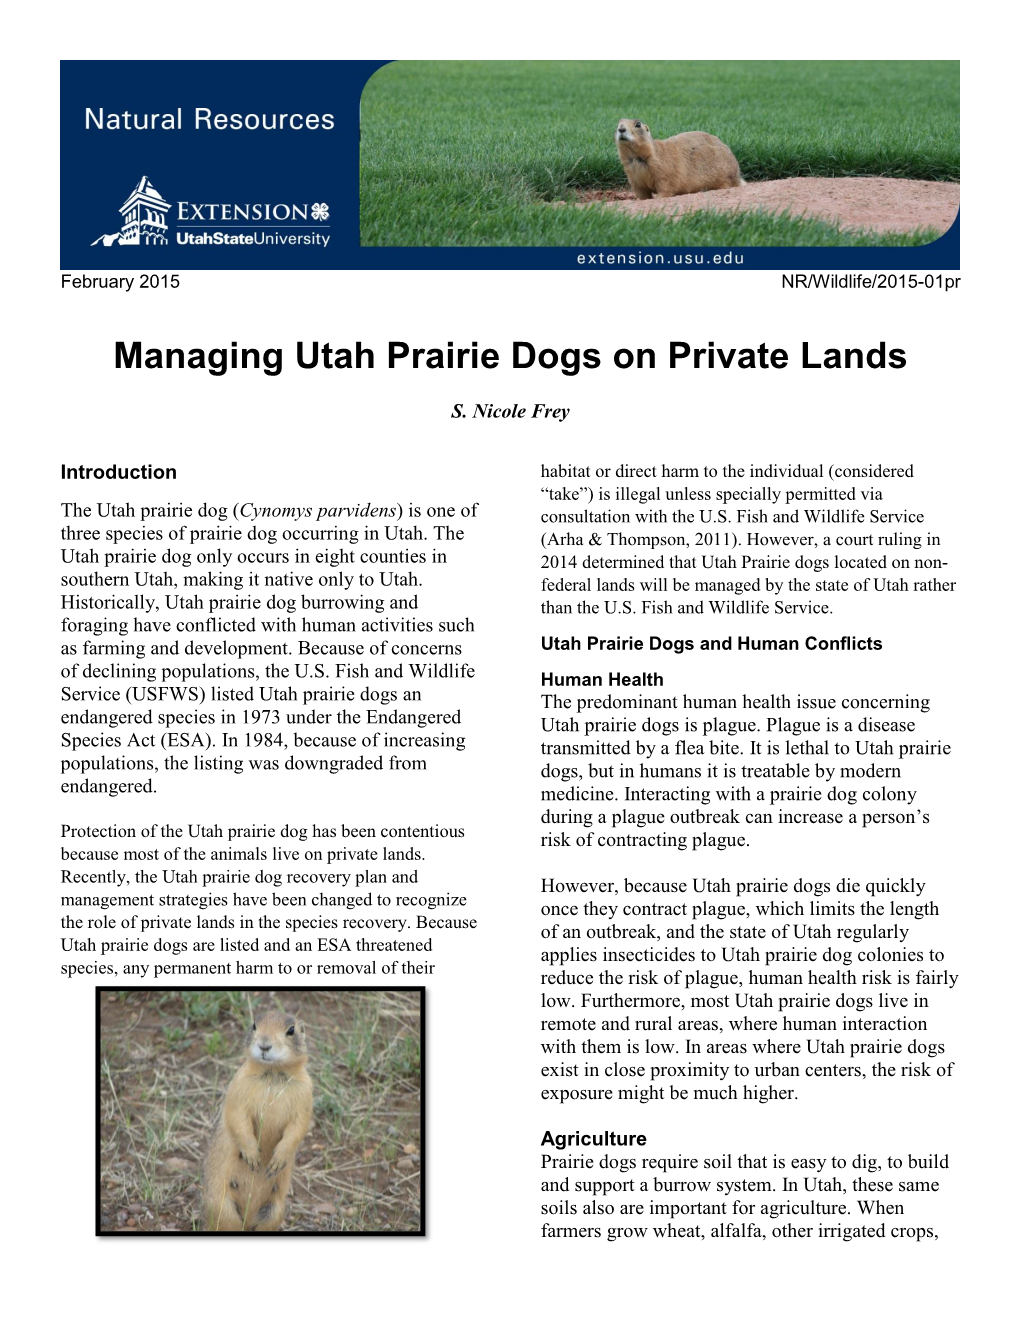 Utah Prairie Dogs on Private Lands